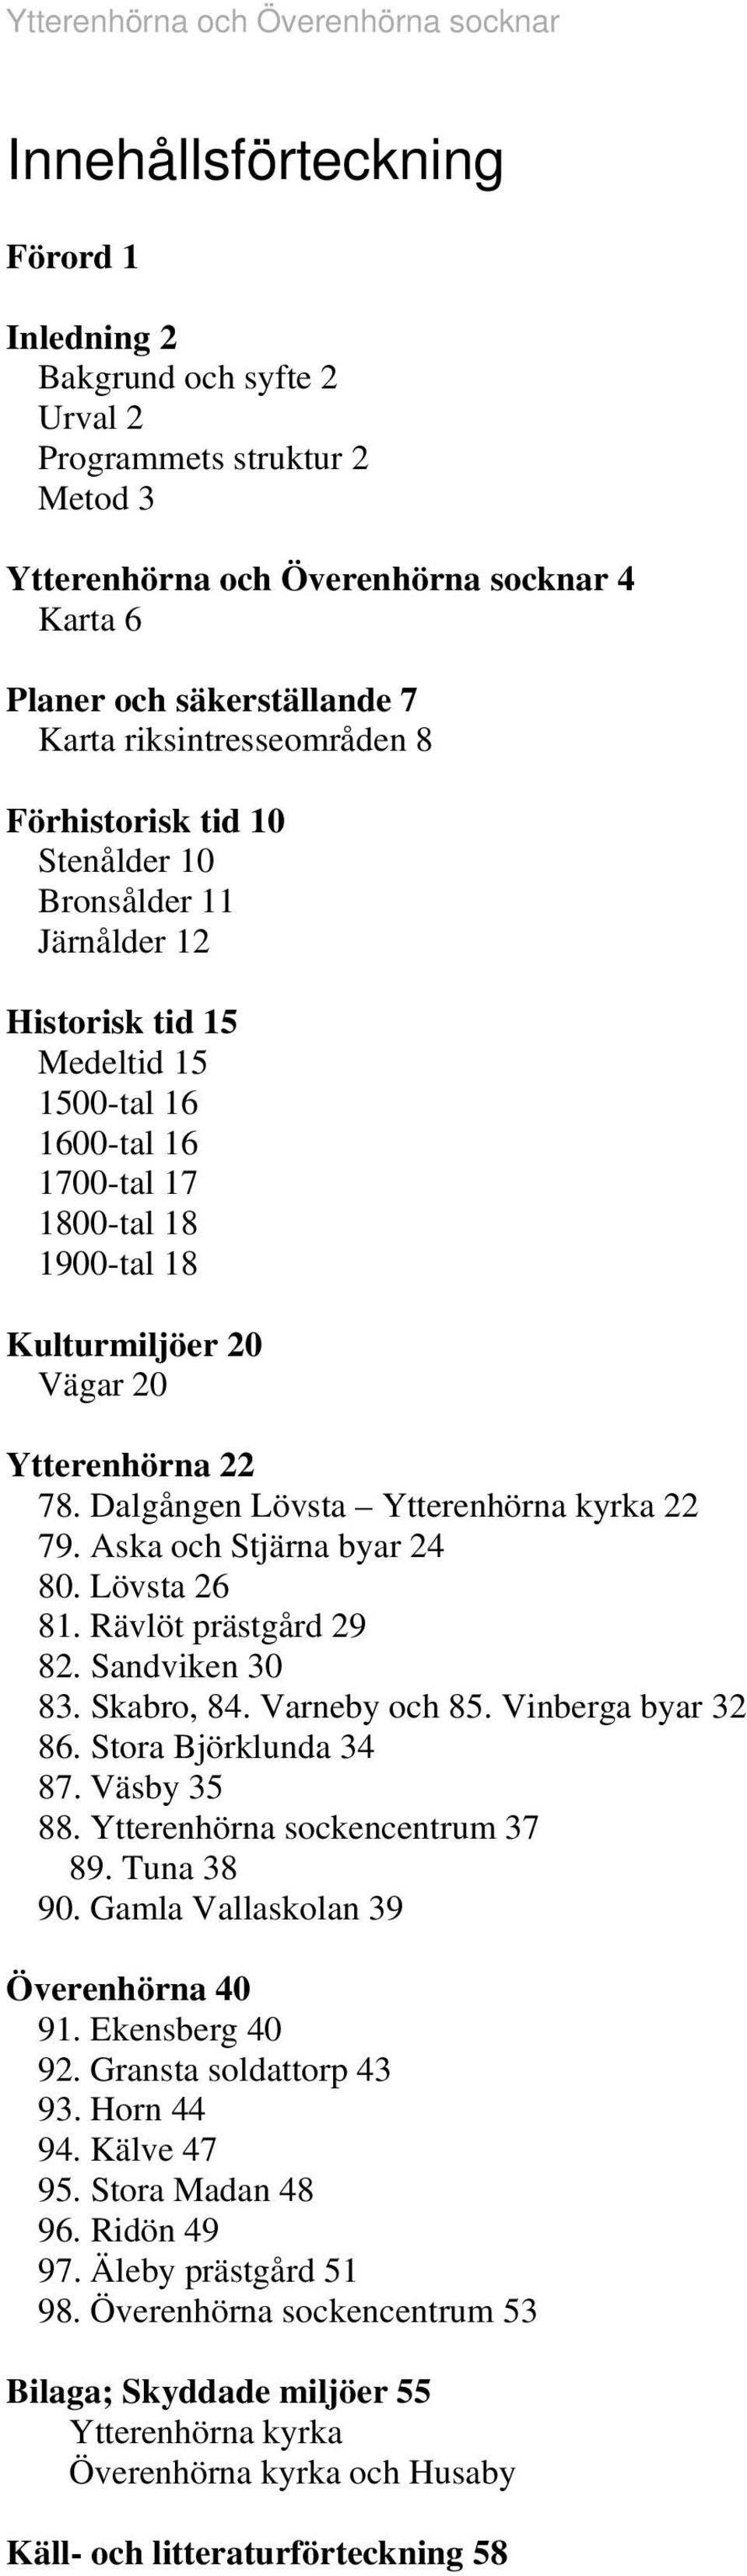 Dalgåge Lövsta Ytterehöra kyrka 79. Aska och Stjära byar 4 80. Lövsta 6 8. Rävlöt prästgård 9 8. Sadvike 30 83. Skabro, 84. Vareby och 85. Viberga byar 3 86. Stora Björkluda 34 87. Väsby 35 88.